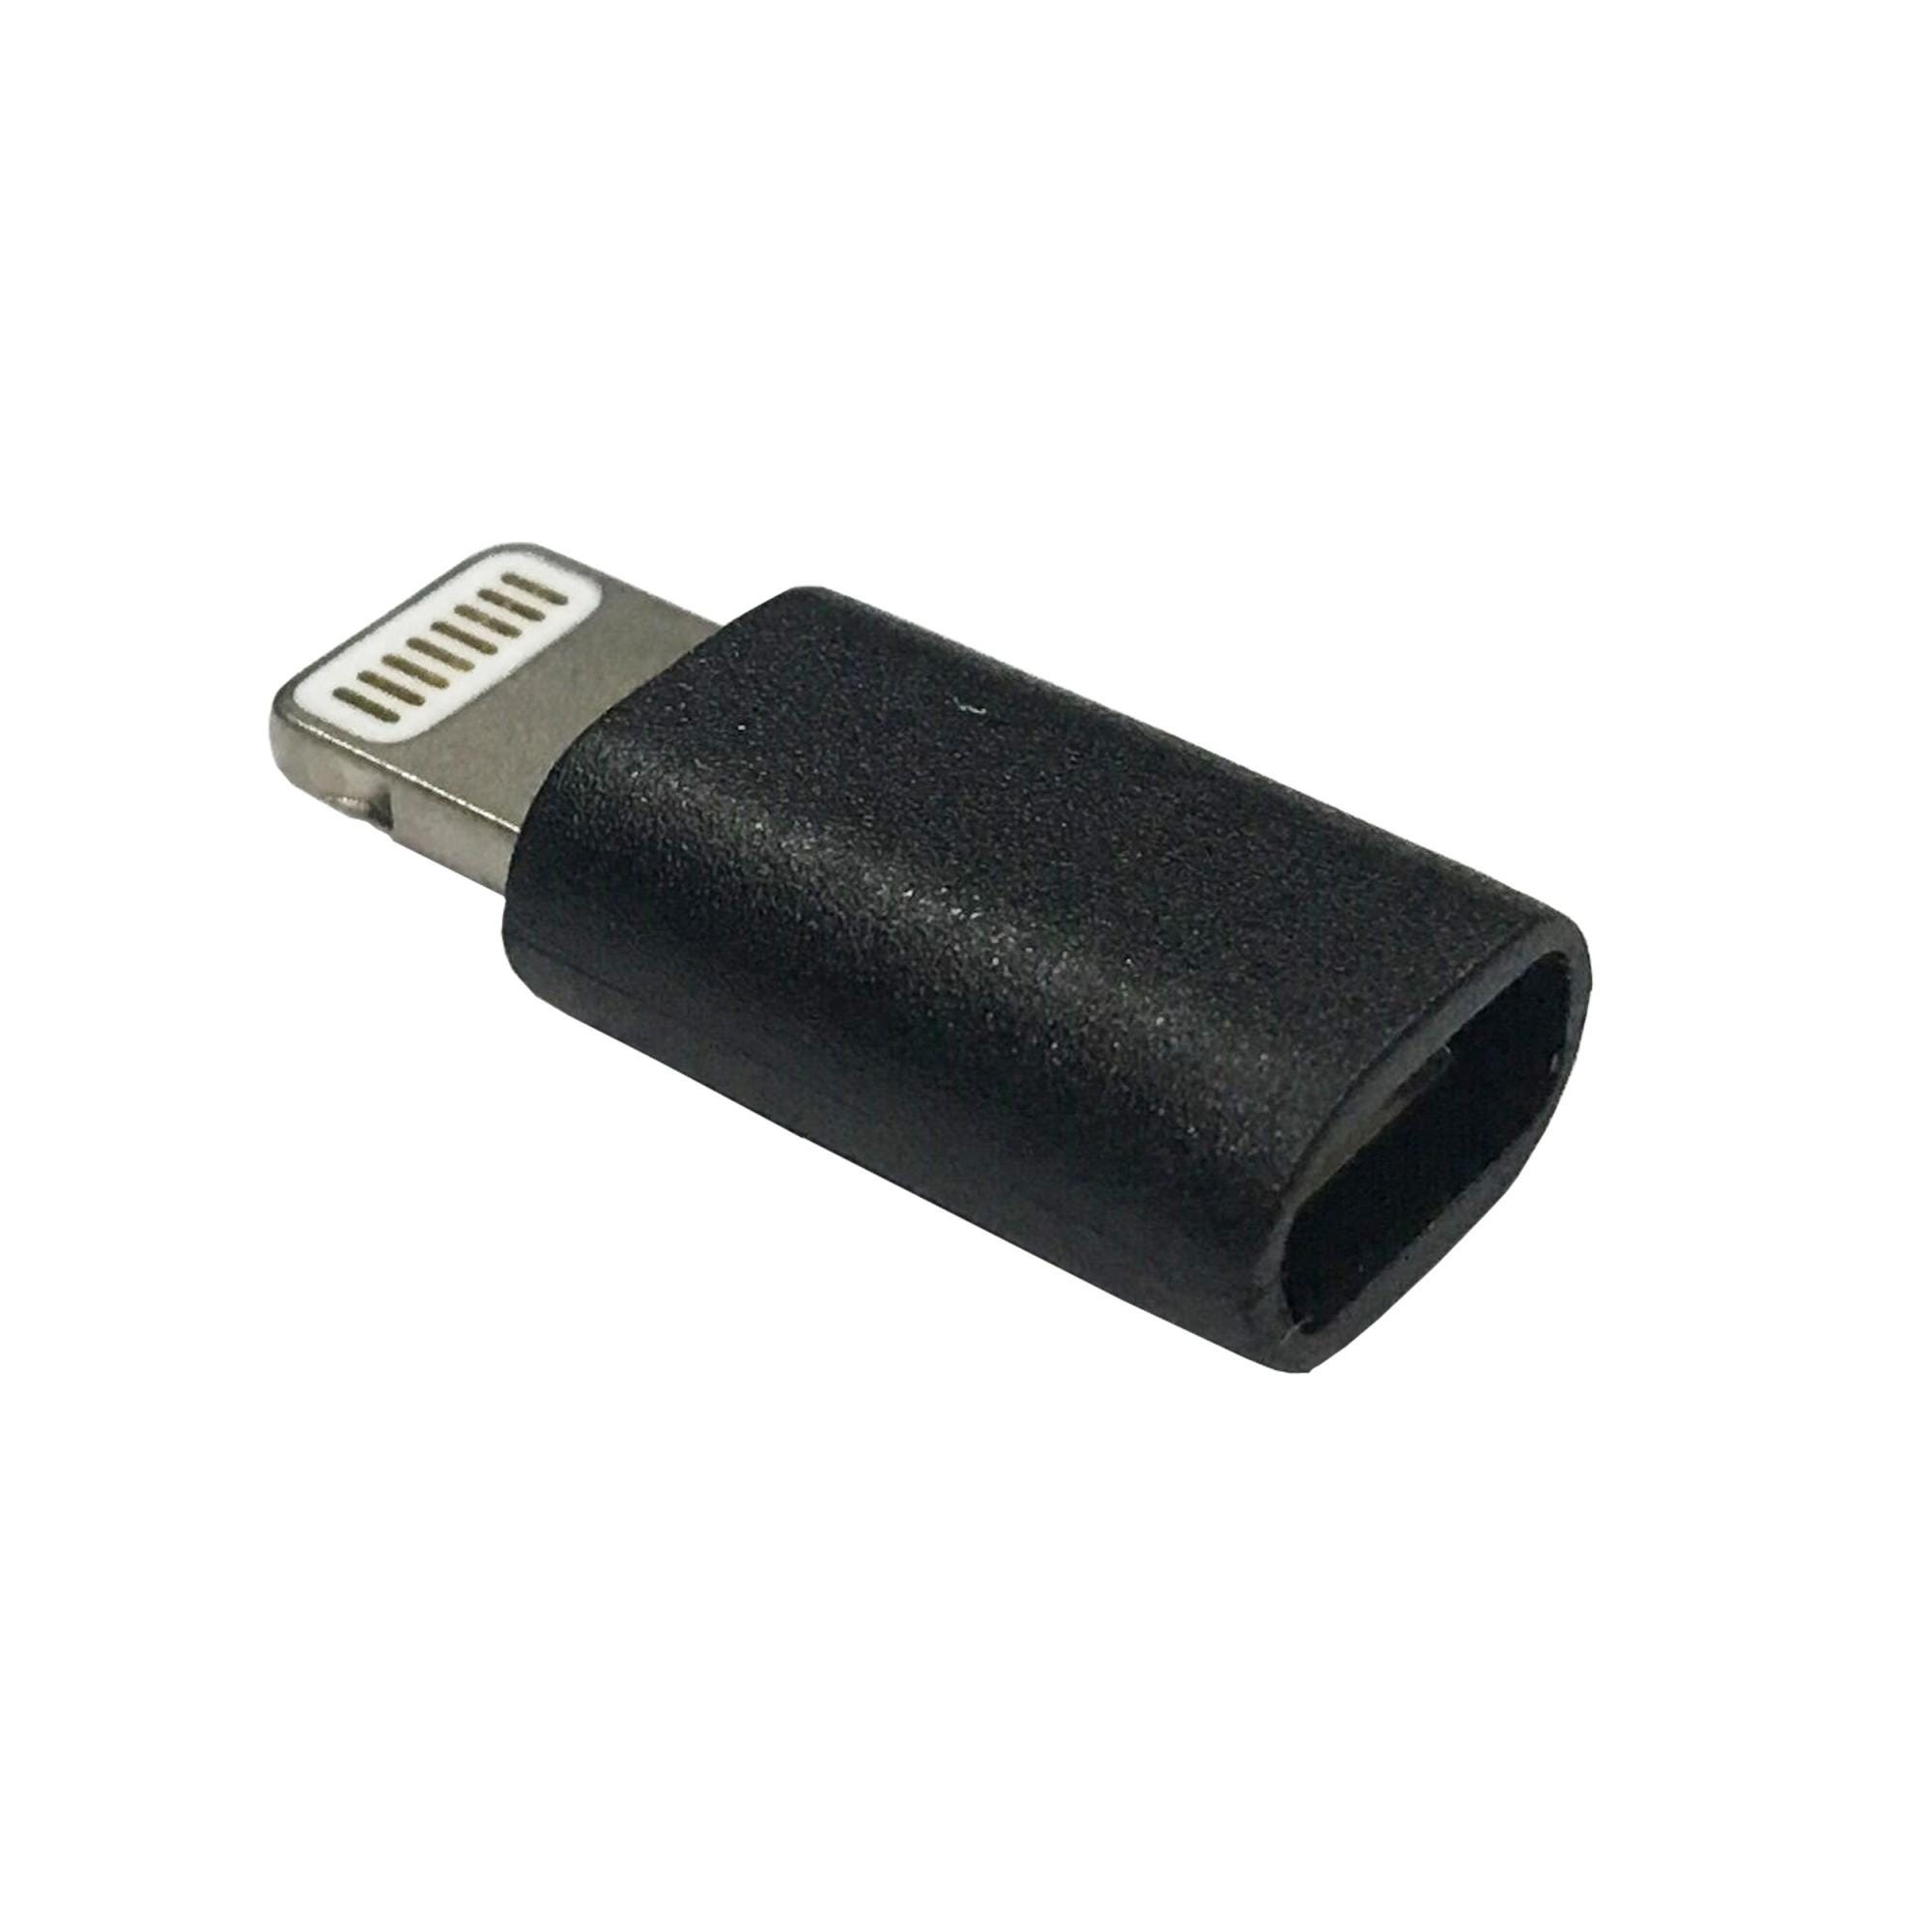 À propos de l'adaptateur USB-C vers Lightning - Assistance Apple